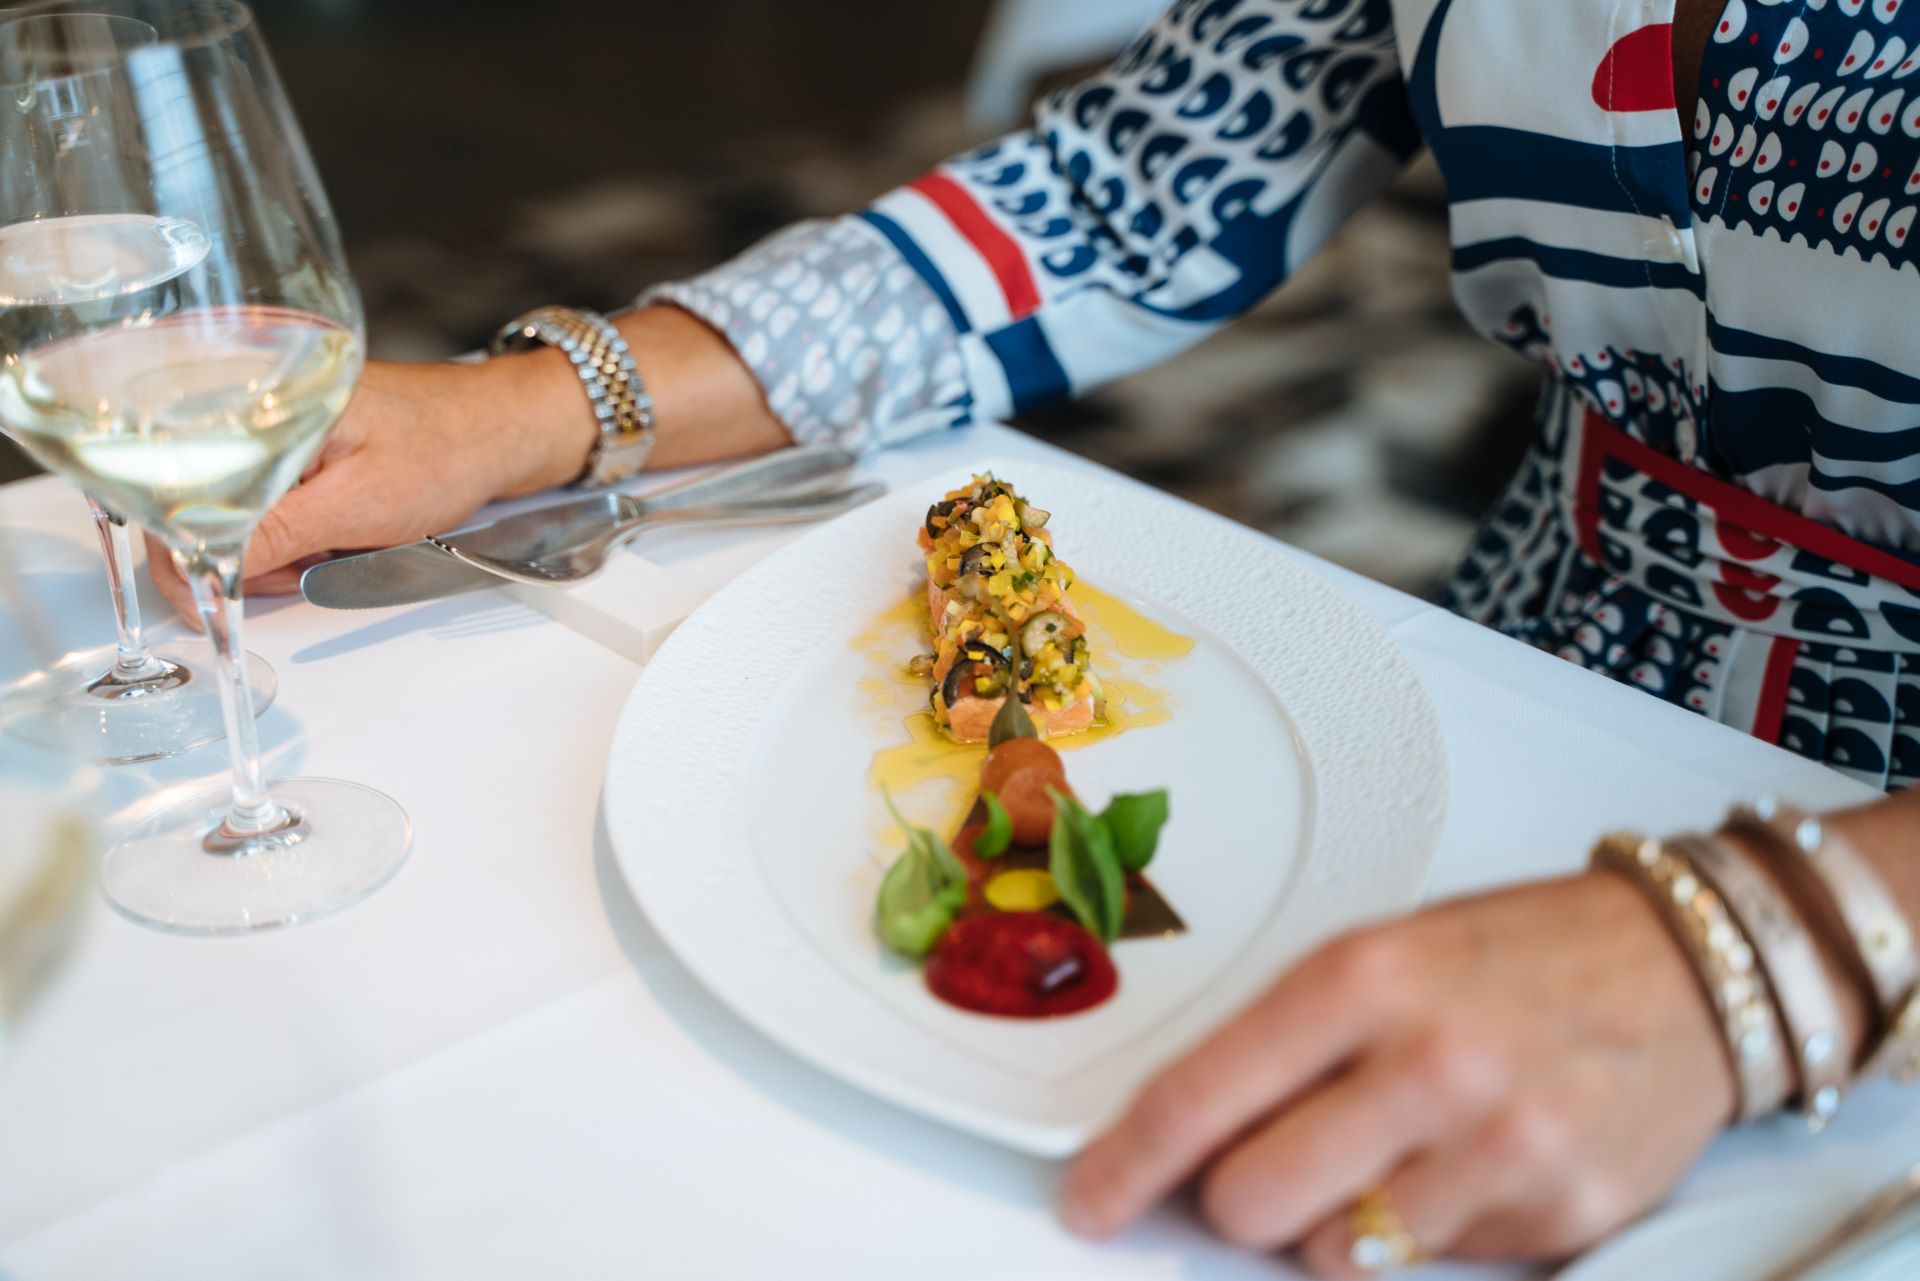 Le point central de cette photo est une assiette de saumon avec des garnitures et une petite salade d'accompagnement sur une assiette blanche, avec un verre à vin et les mains d'une invitée visibles au bord de la photo.